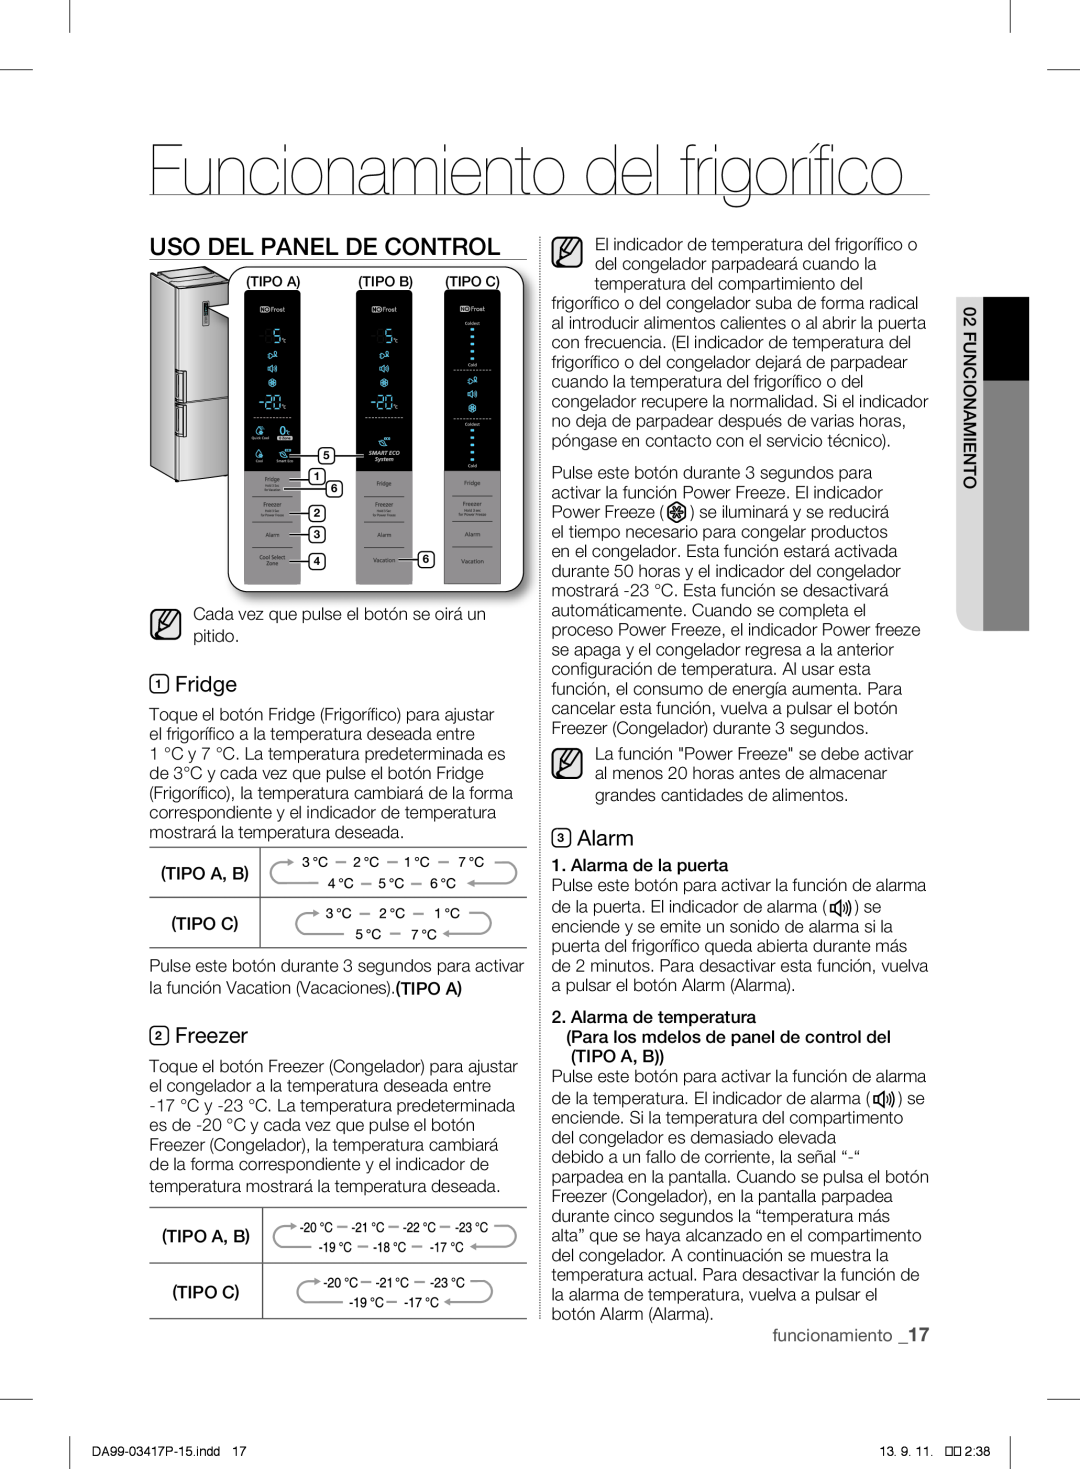 Samsung RL60GGE7F1/XEF Funcionamiento del frigorífico, Uso Del Panel De Control, Fridge, Freezer, Alarm, funcionamiento 